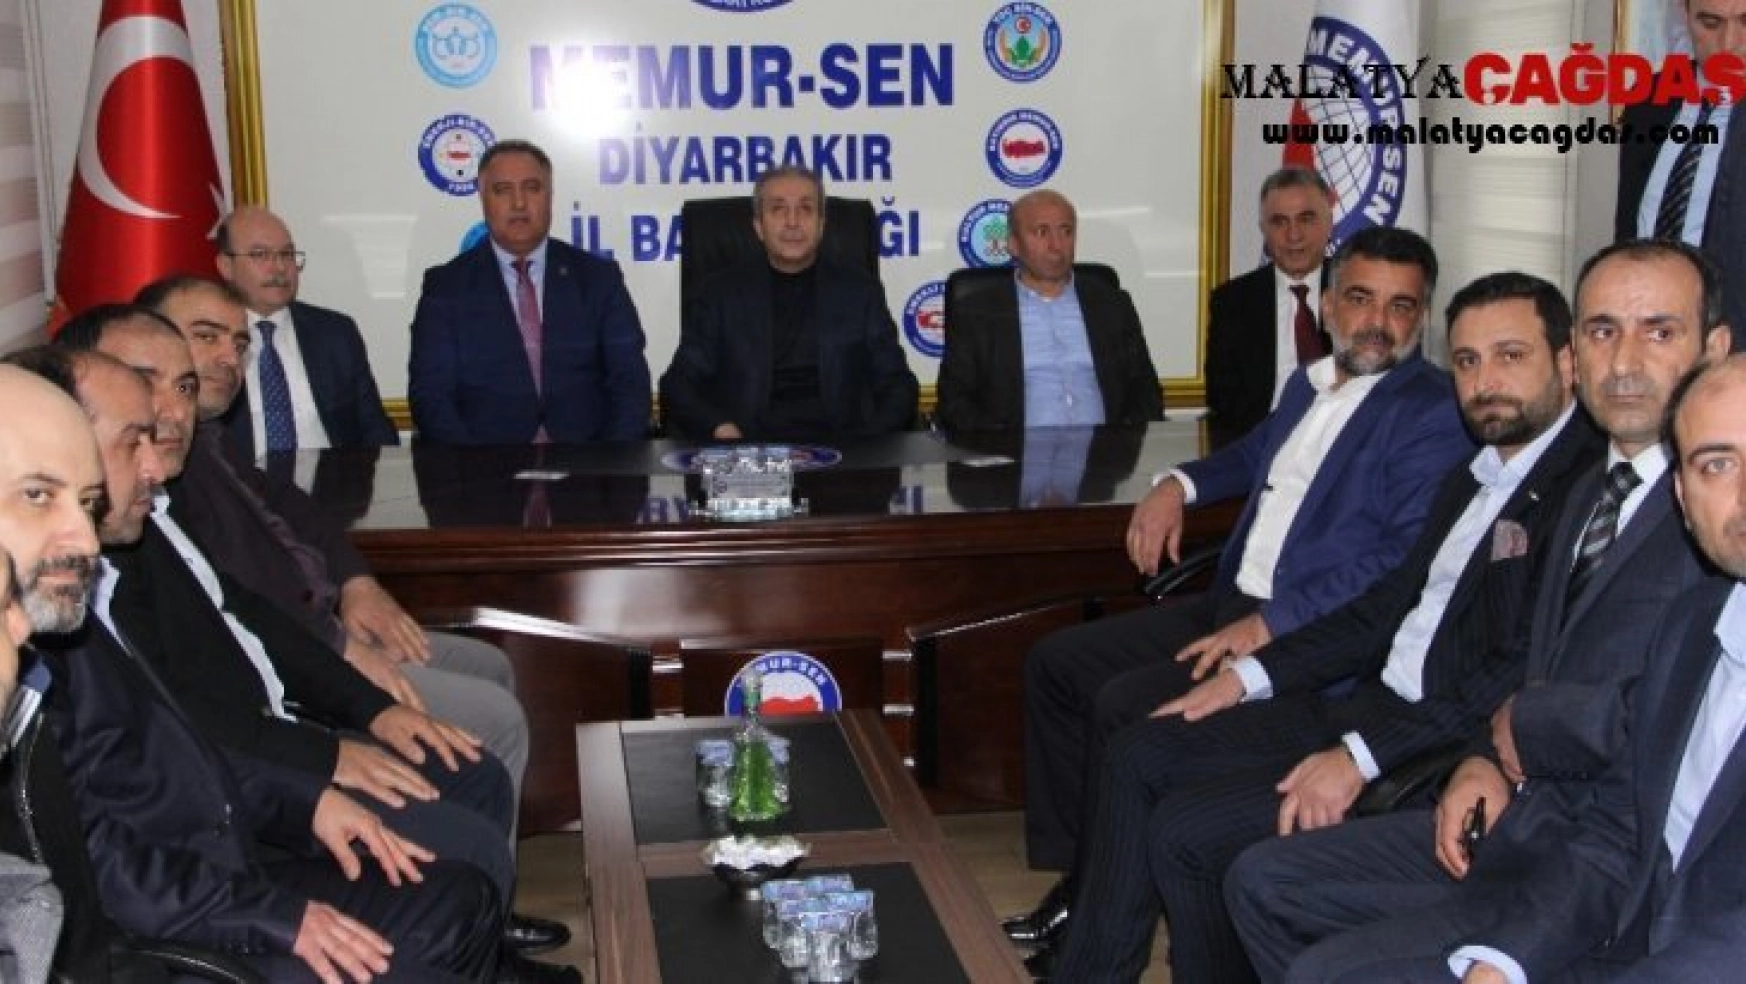 Memur-Sen Diyarbakır Şube Başkanı Ensarioğlu'na ziyaret